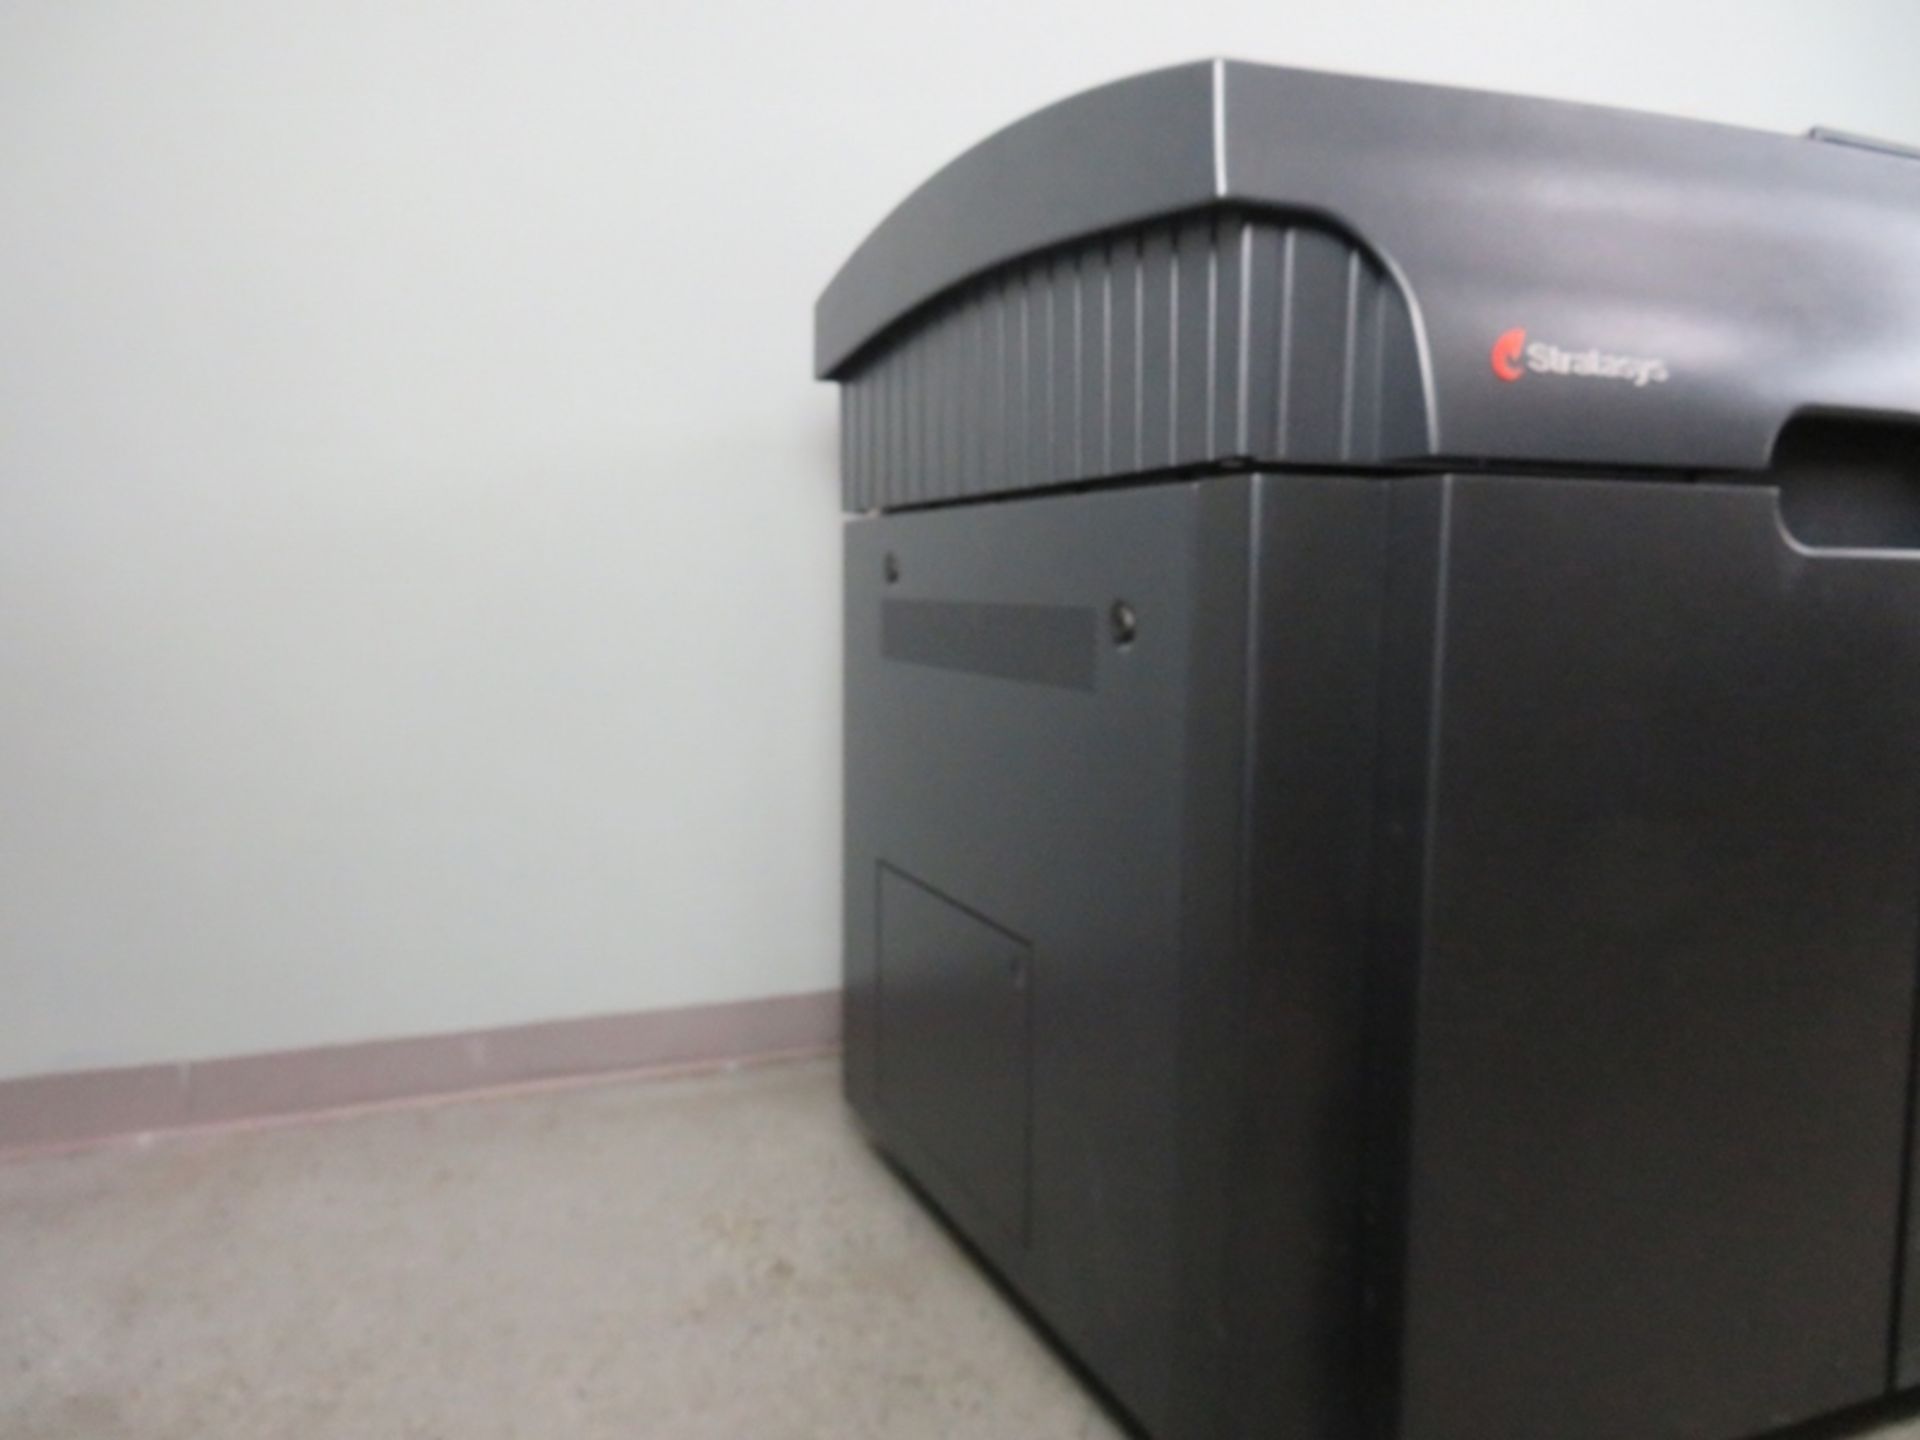 Stratsys Eden 350V 3D Printer, New in 2014 - Image 6 of 26